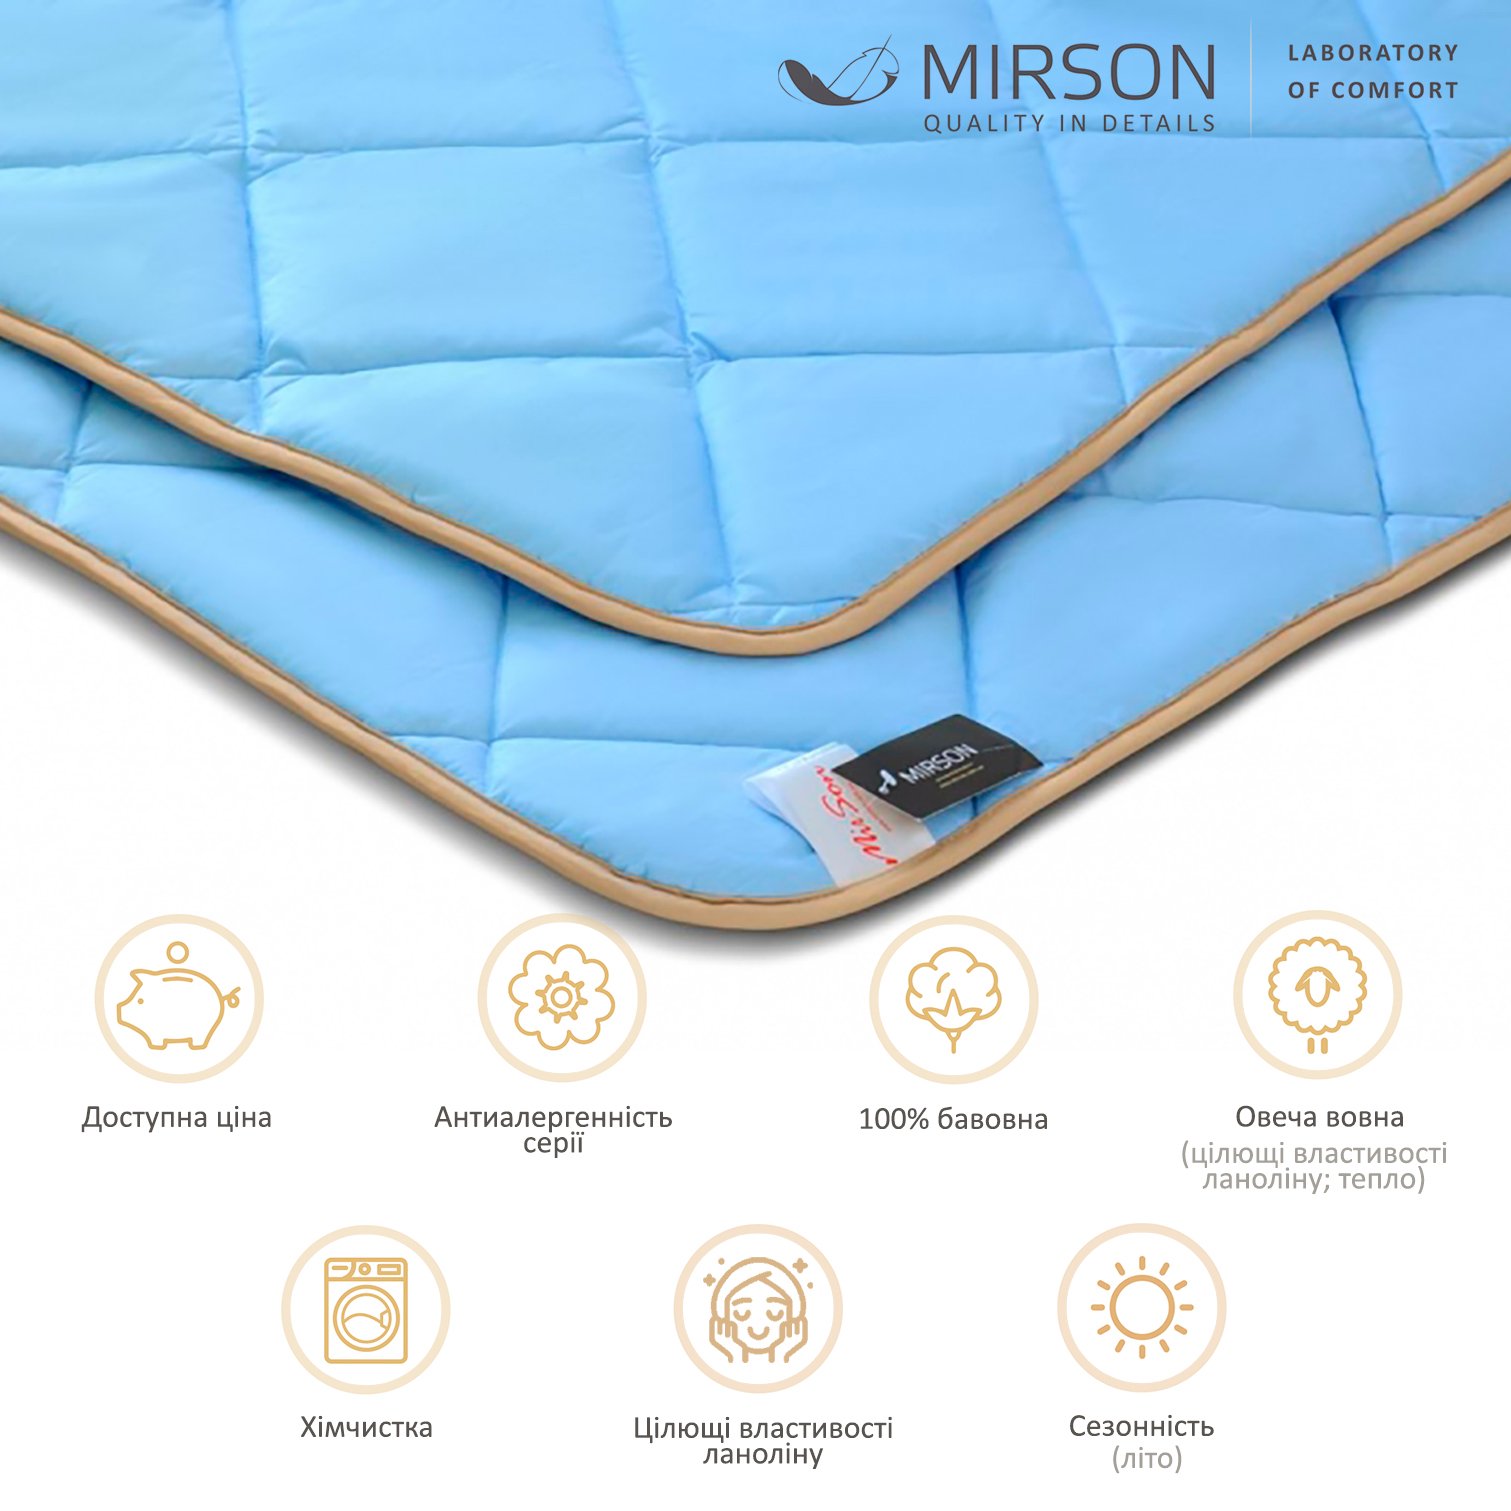 Одеяло шерстяное MirSon Valentino № 0336, летнее, 110x140 см, голубое - фото 5